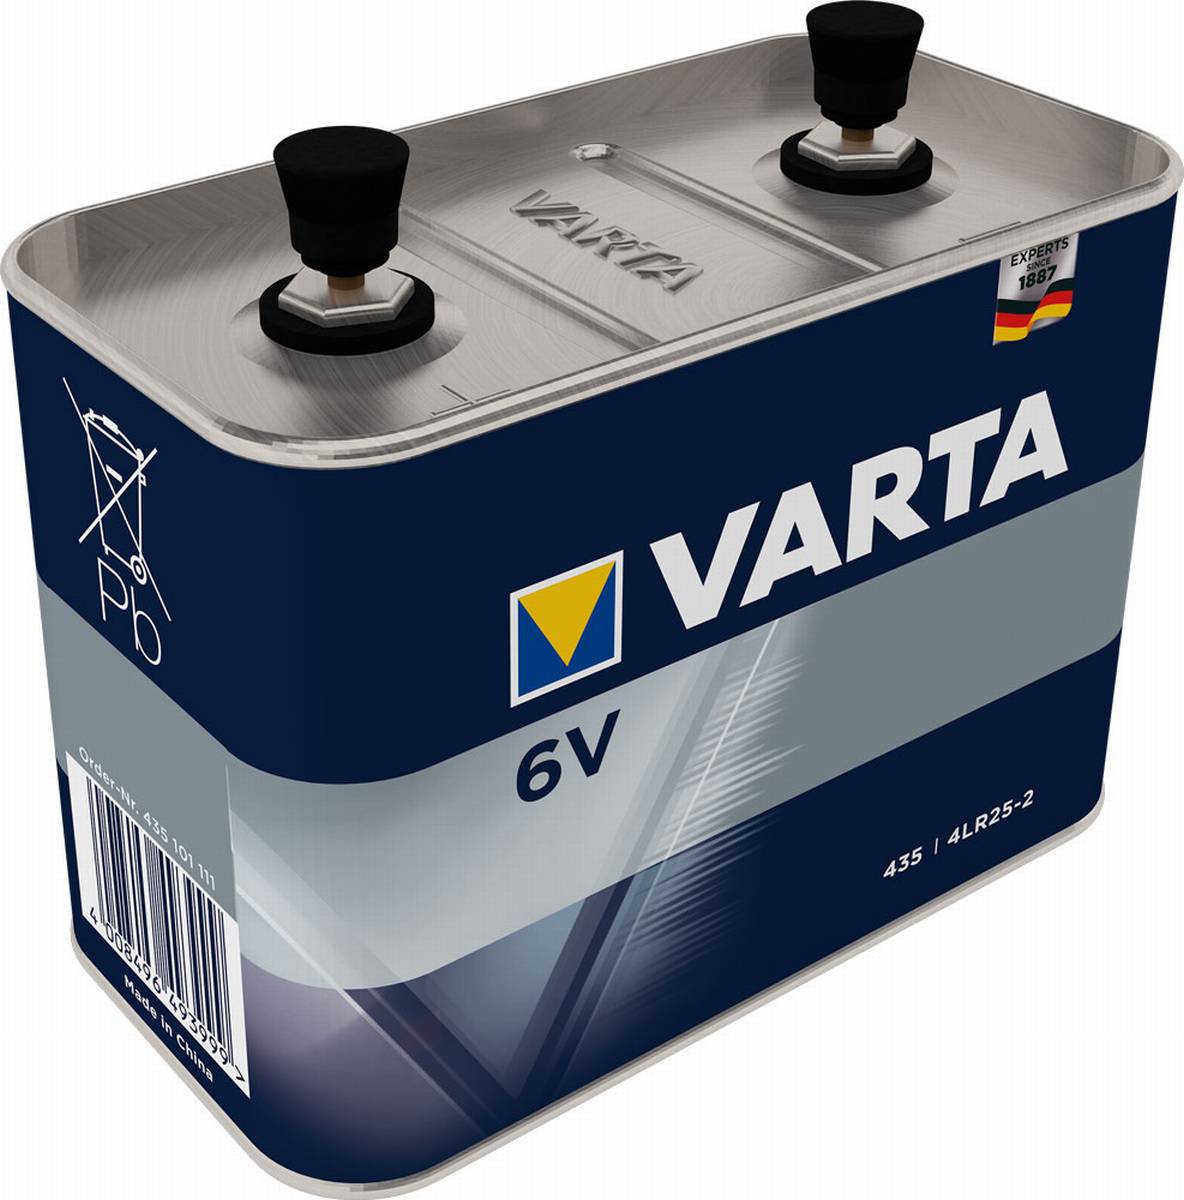 Varta Professional Worklight 435, 4R25-2 lavoro 6V blocco batteria (sciolto)